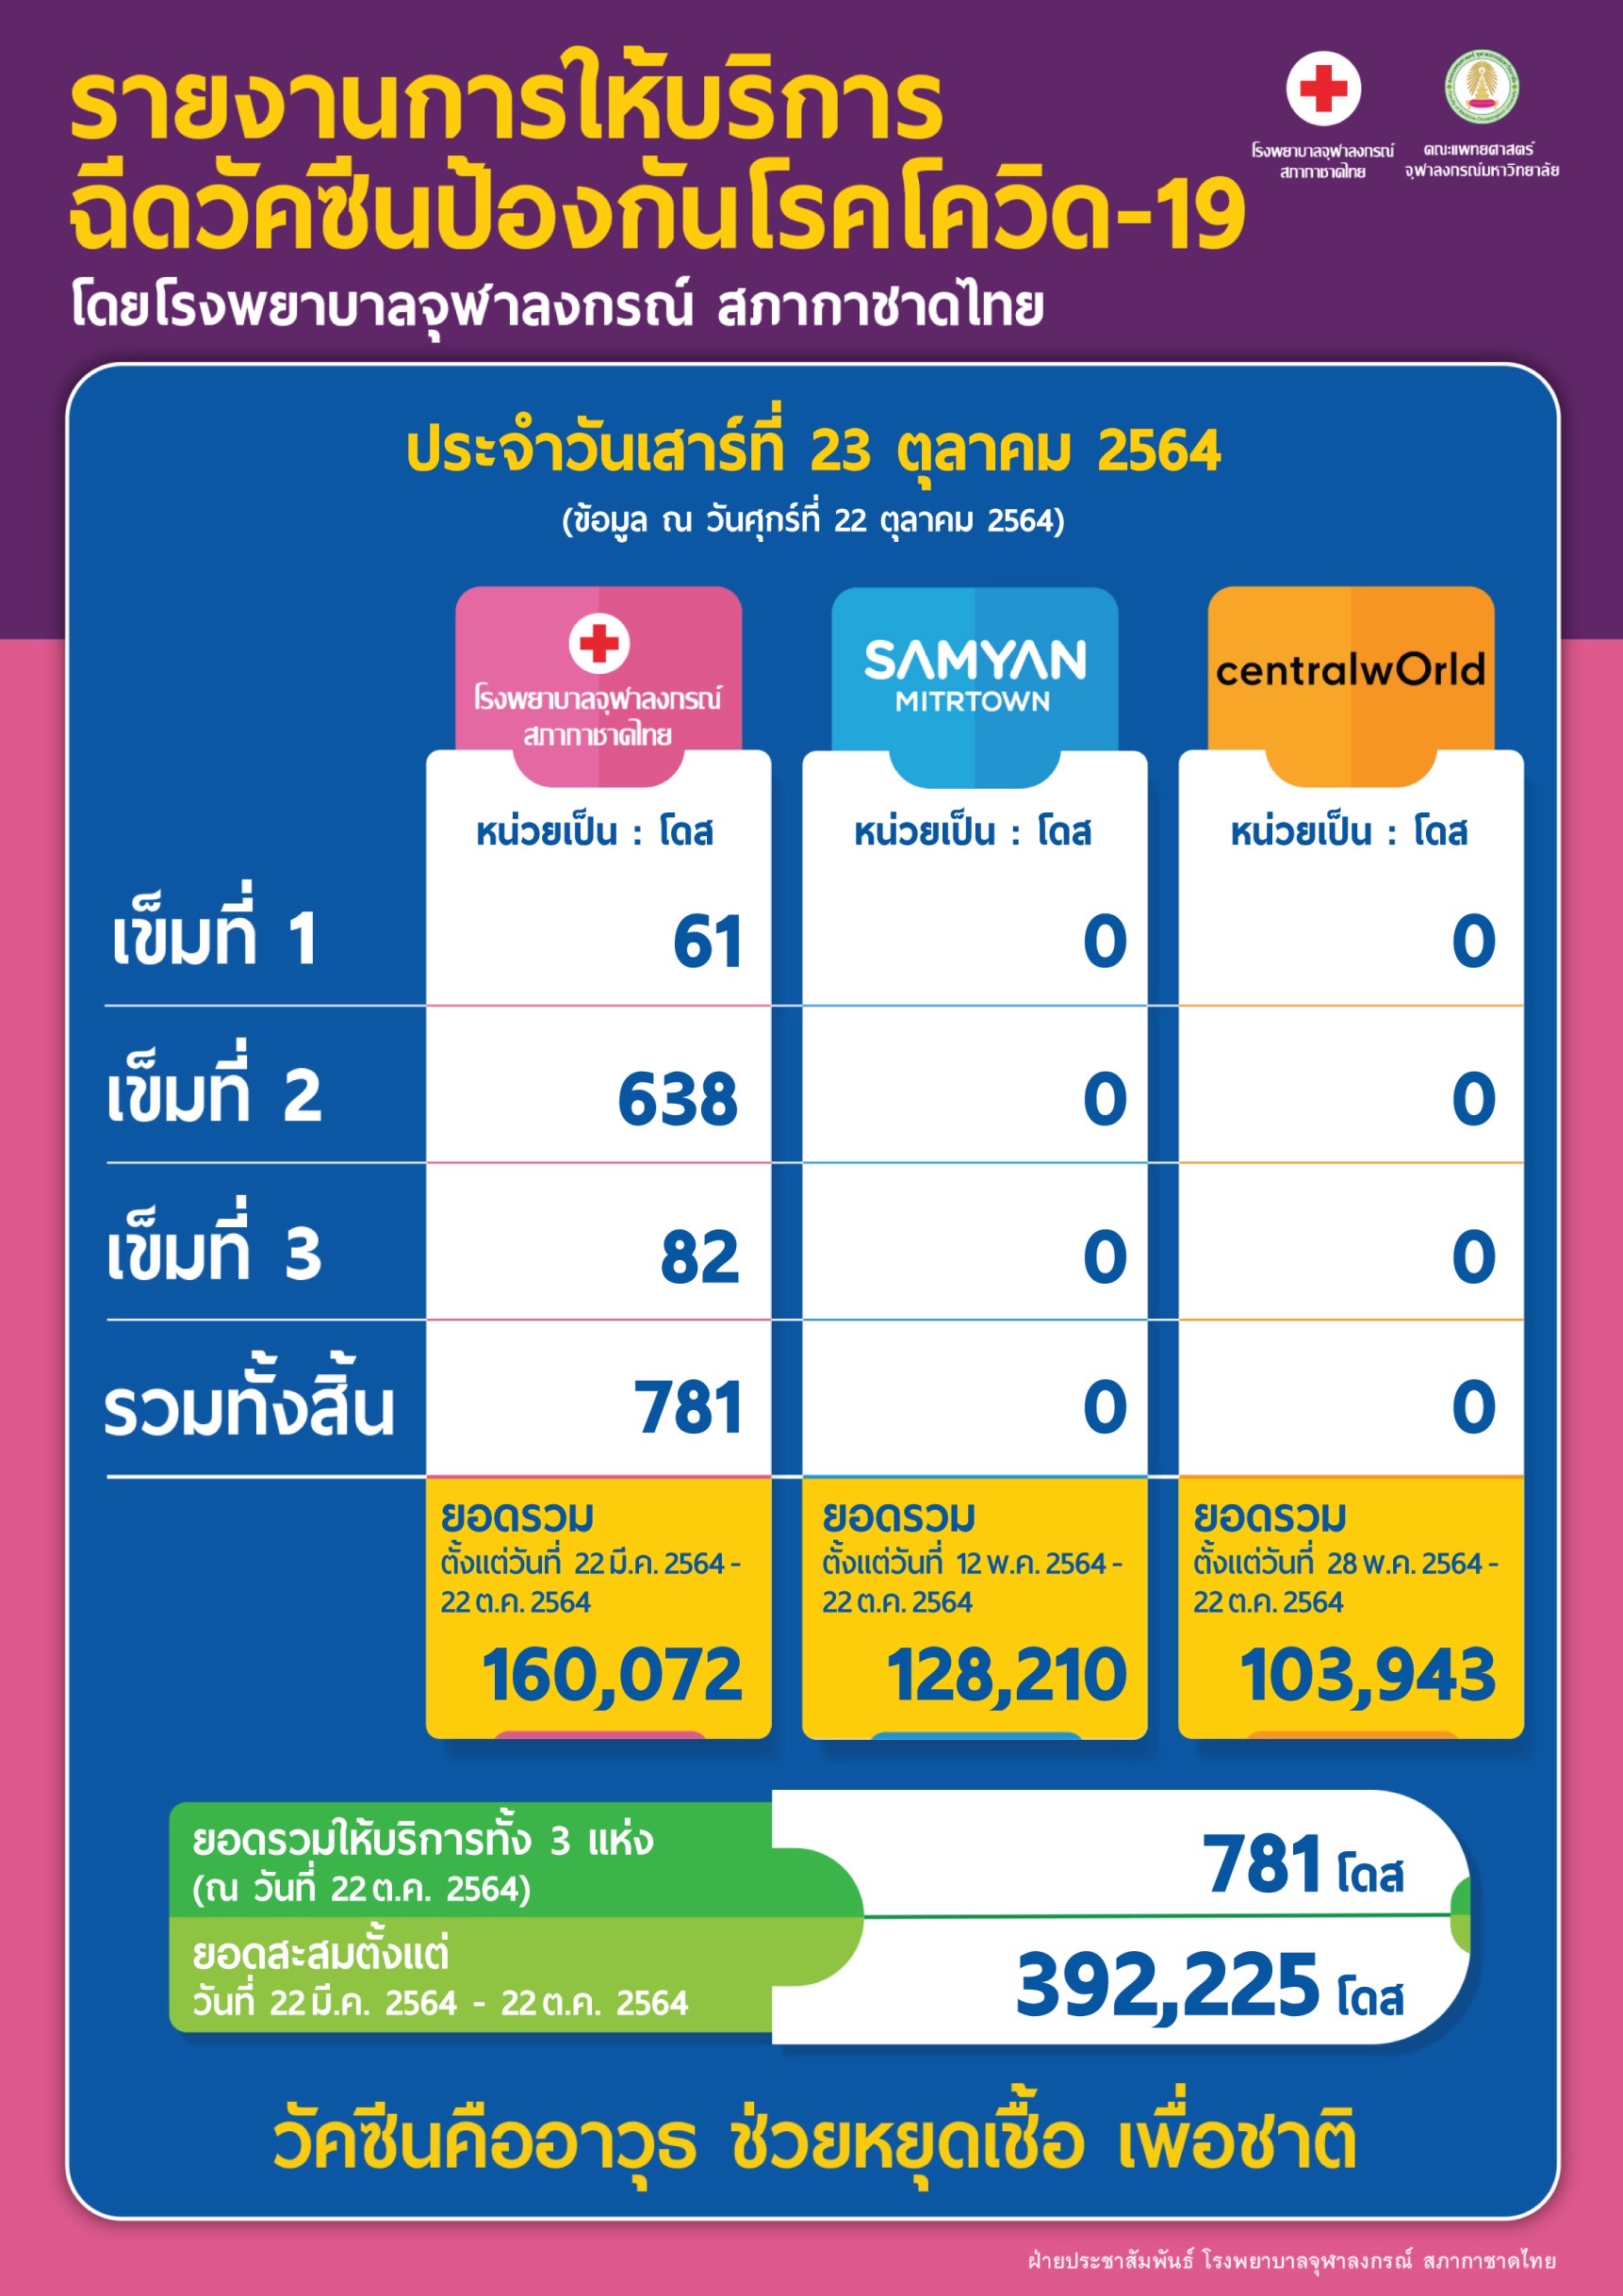 รายงานการให้บริการฉีดวัคซีนป้องกันโรคโควิด-19 โดยโรงพยาบาลจุฬาลงกรณ์ สภากาชาดไทย ประจำวันเสาร์ที่ 23 ตุลาคม 2564